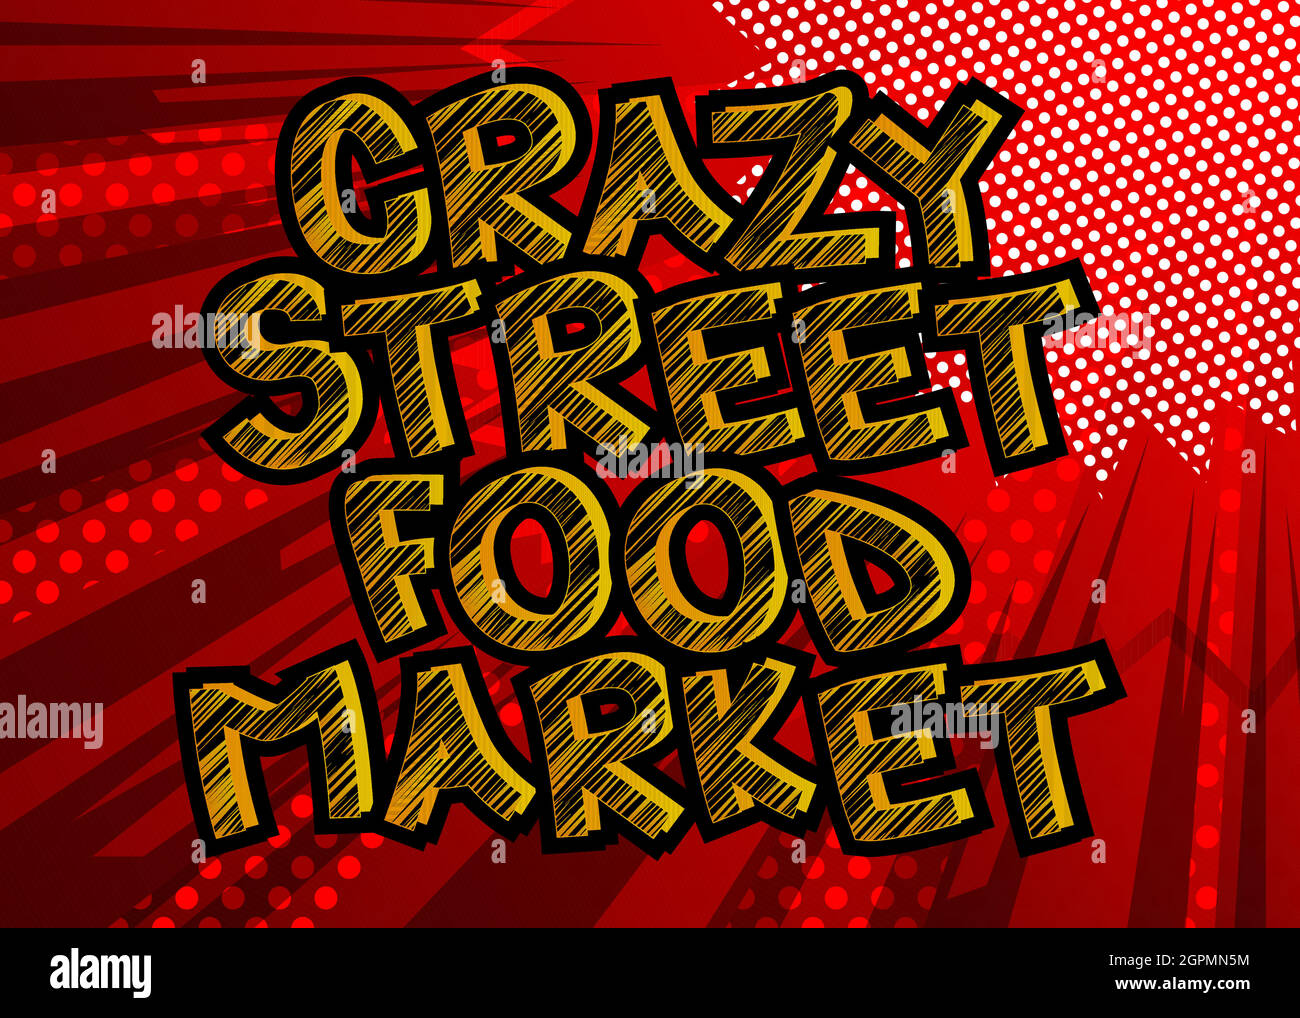 Crazy Street Food Market - testo in stile fumetto. Illustrazione Vettoriale